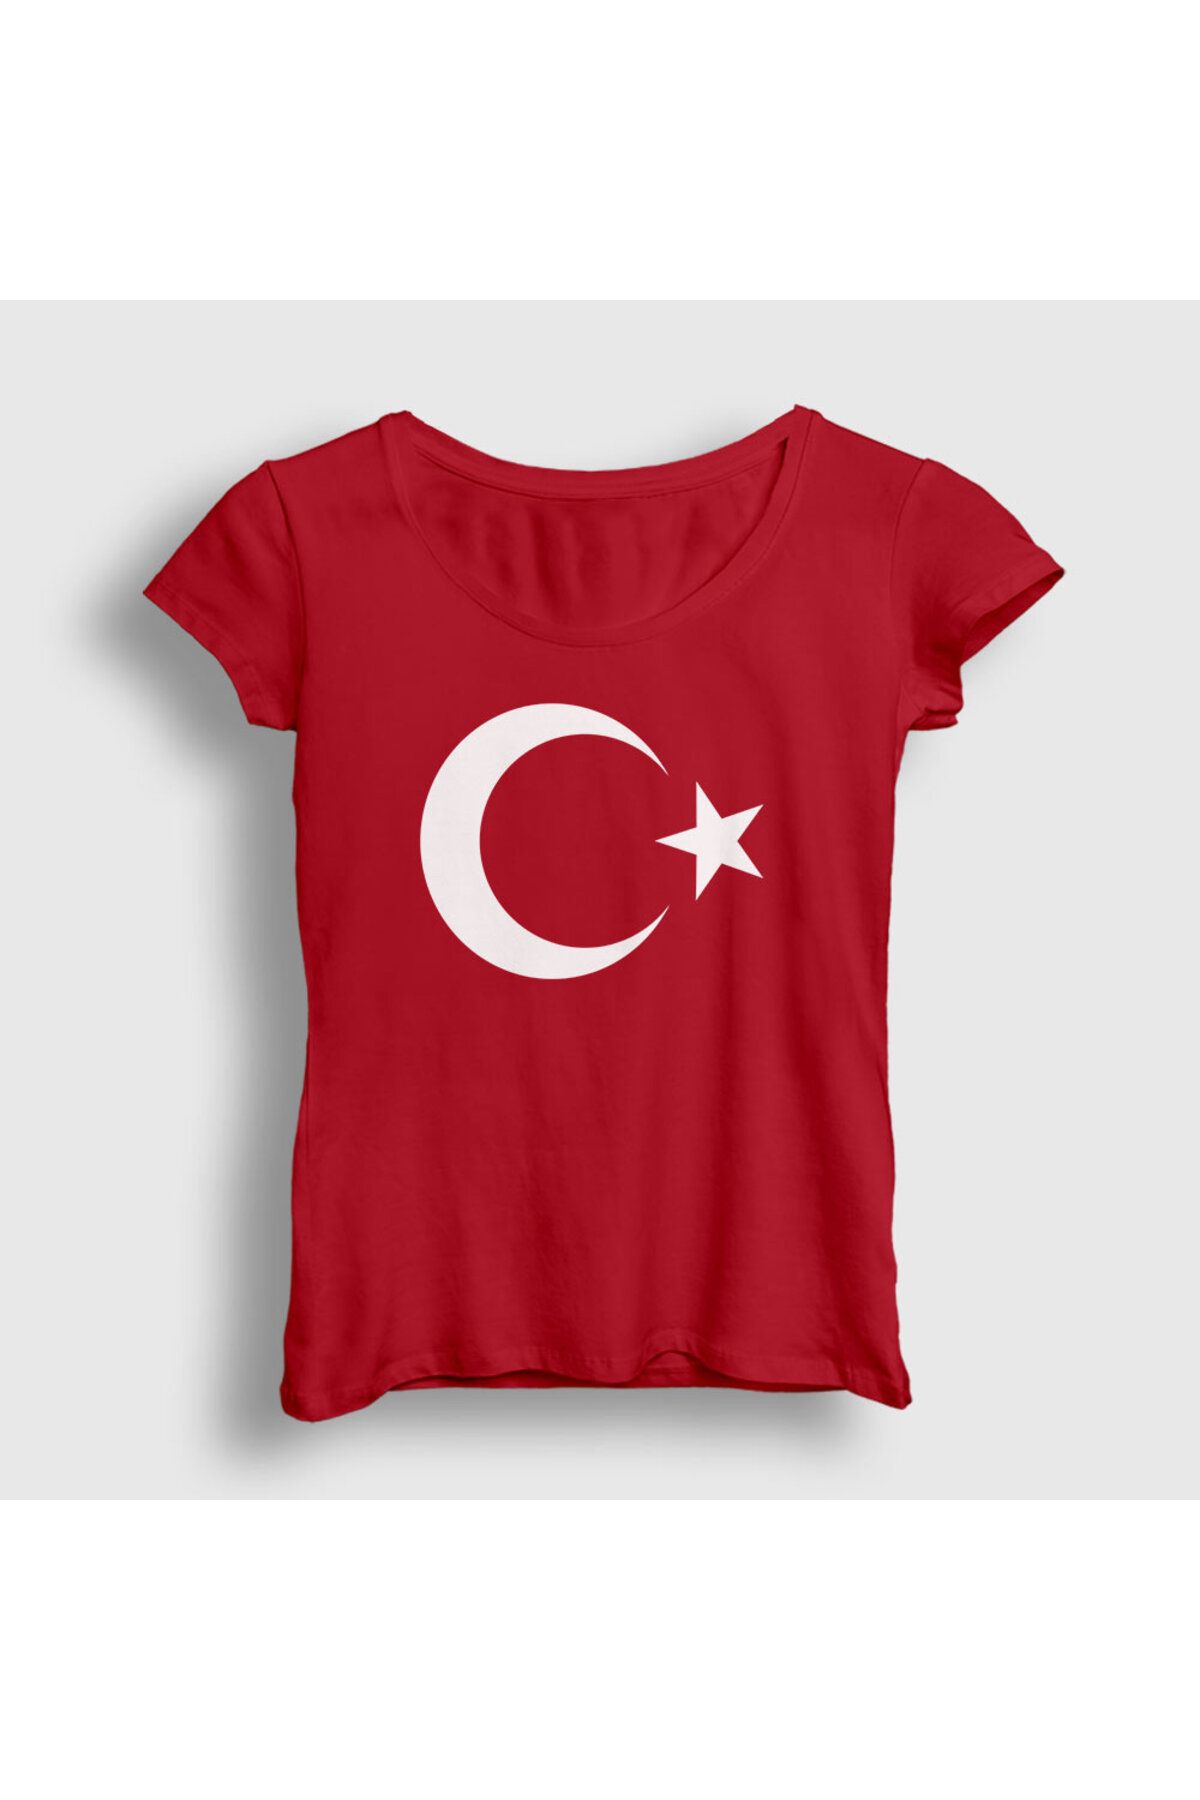 Tisort.ist Kadın Kırmızı Ay Yıldızlı T-shirt 74923tt